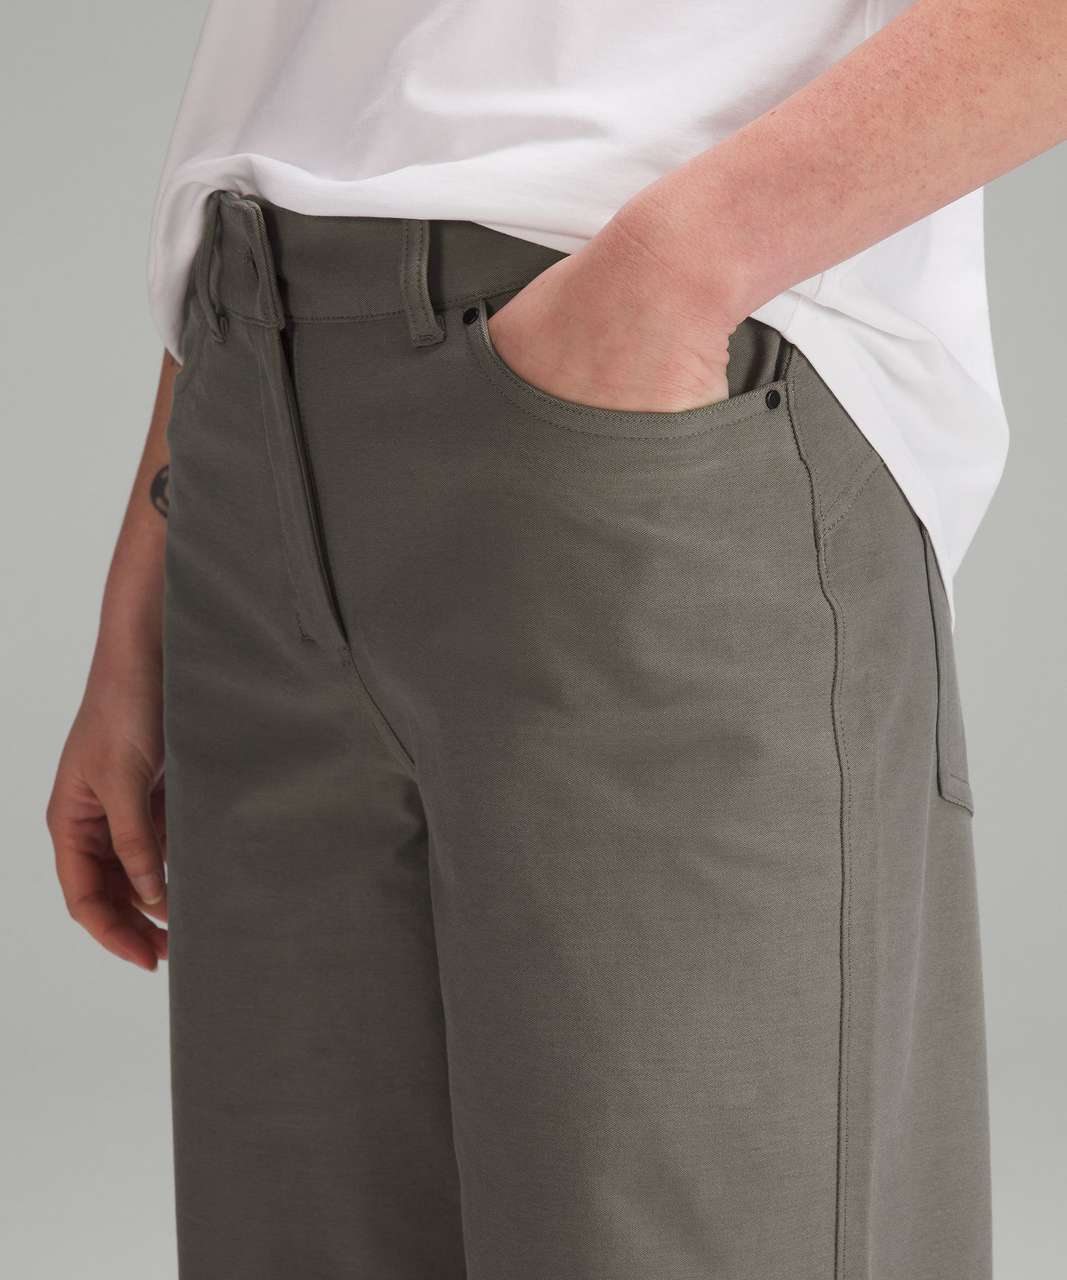 City Sleek 5 Pocket High-Rise Wide-Leg Pant Full Length *Light Utilitech, Women's Trousers, lululemon